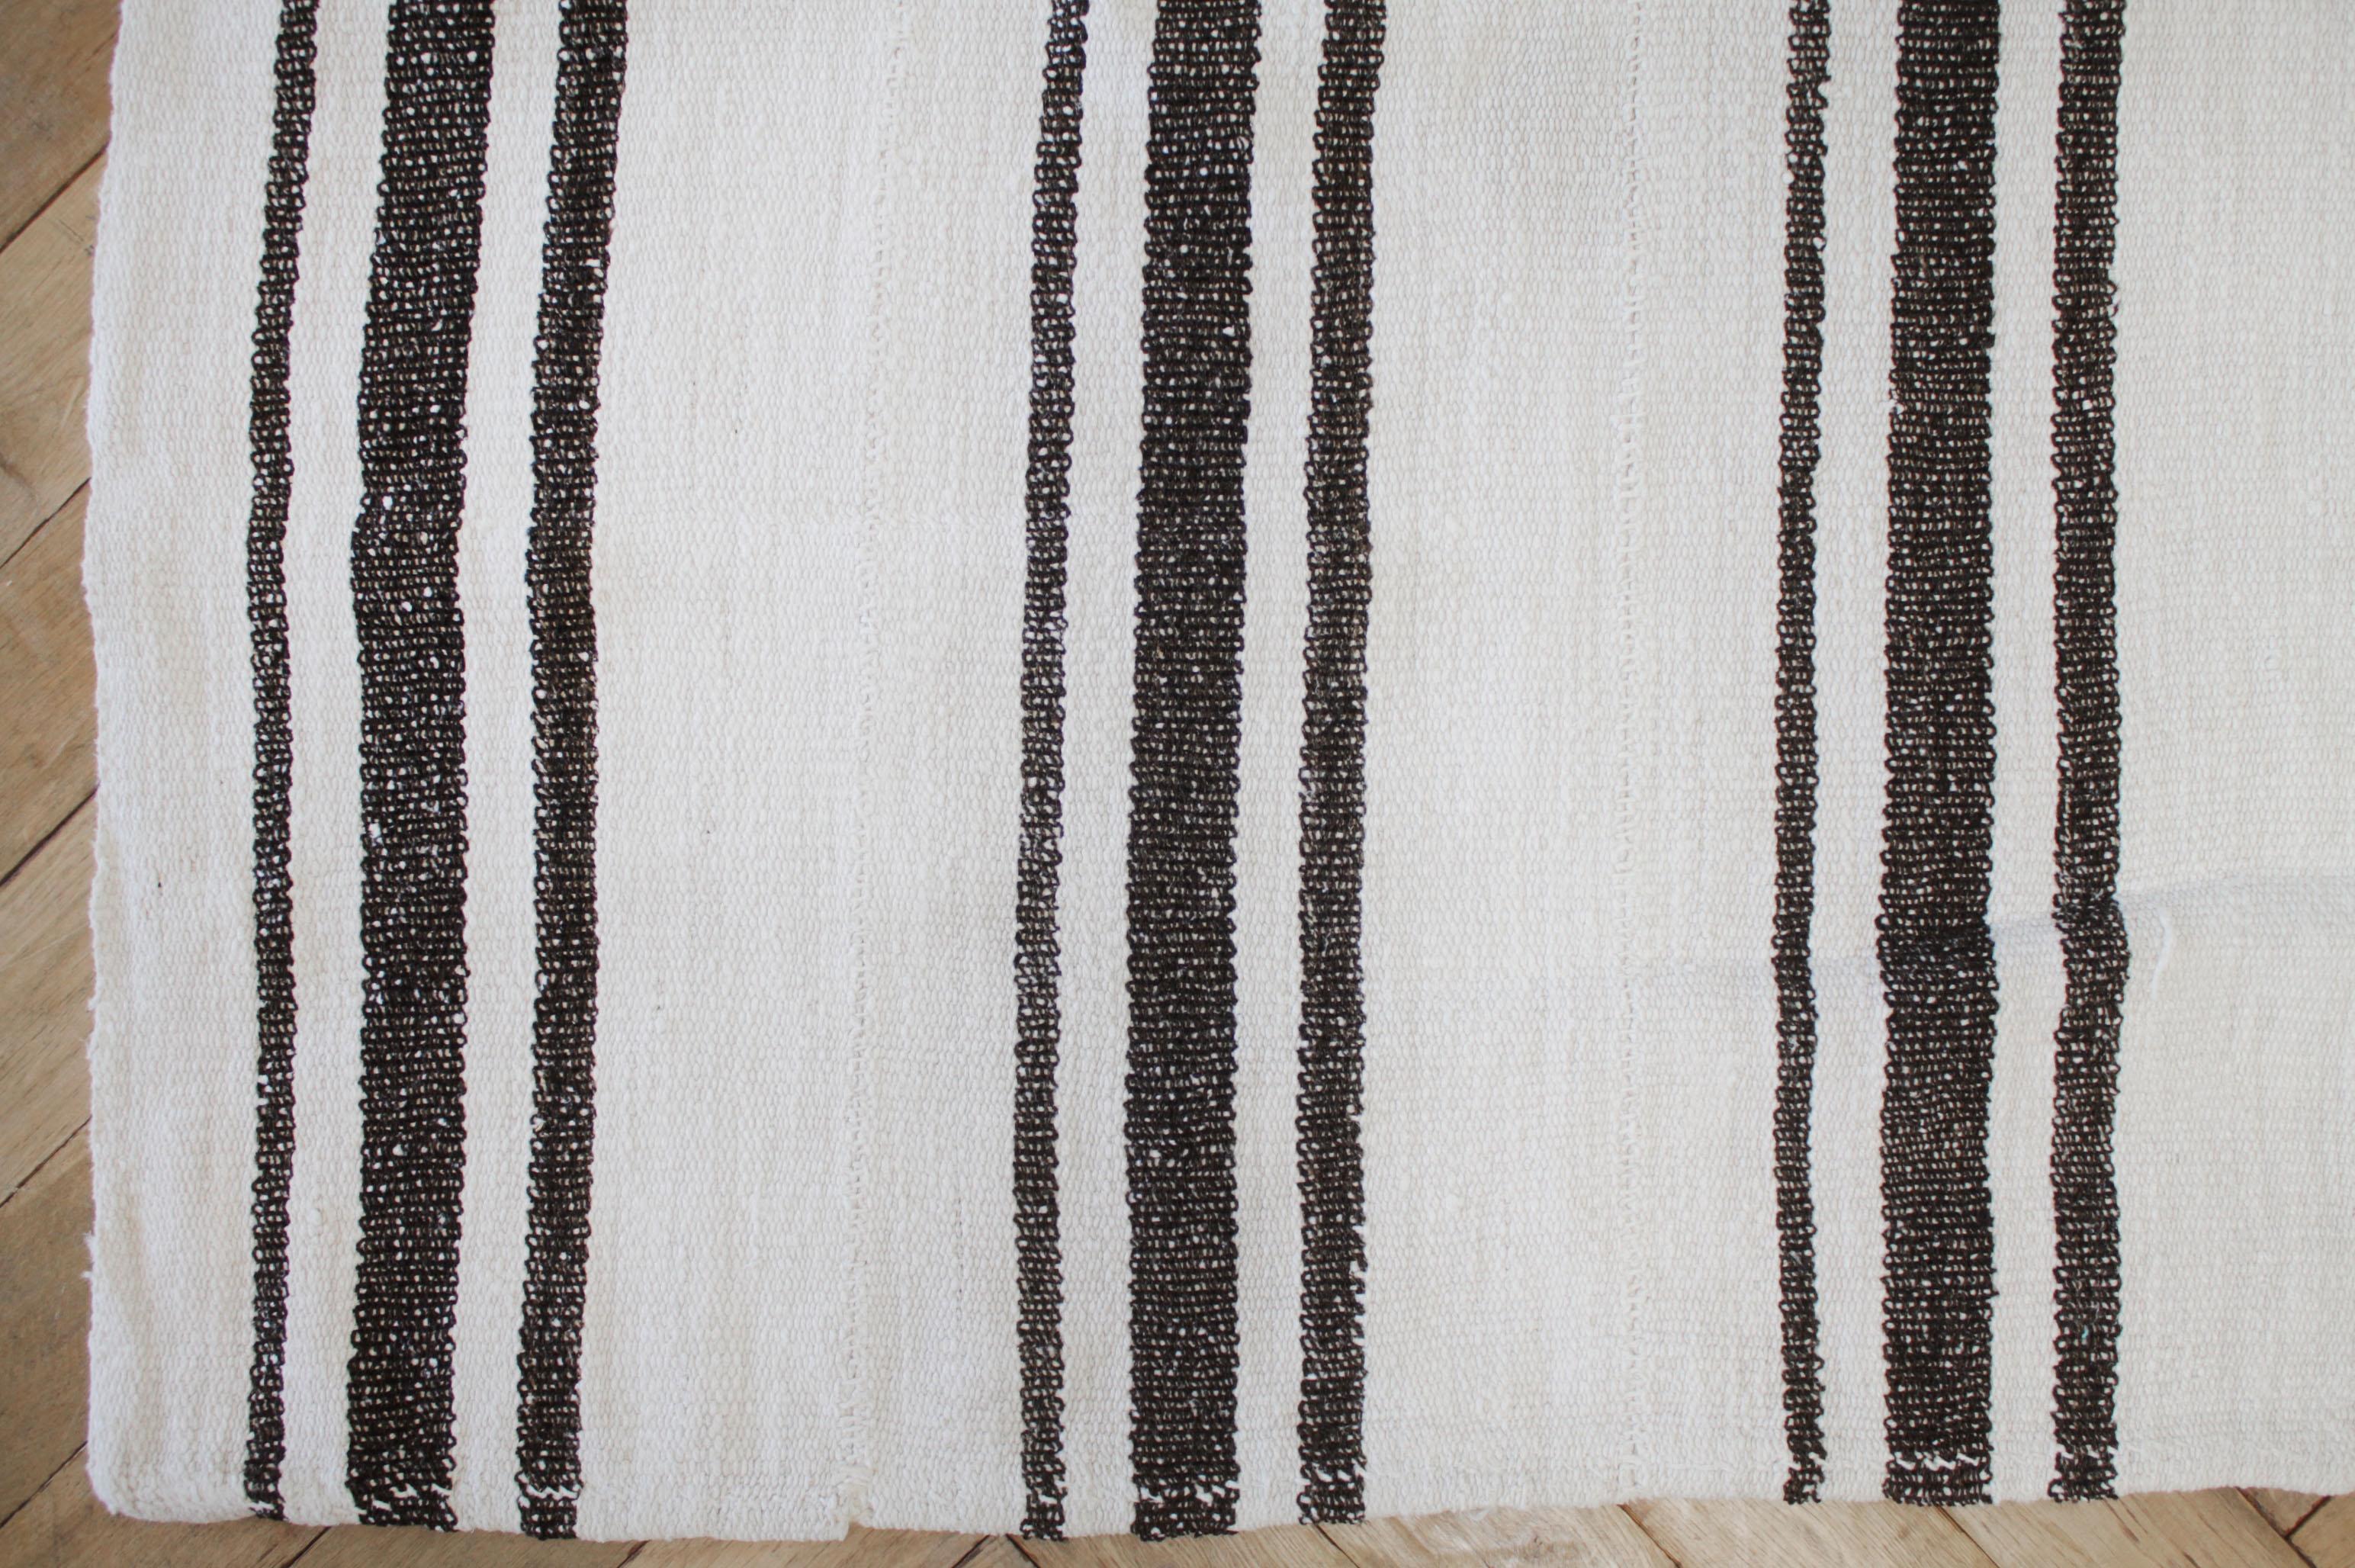 Samteppich
Türkischer Vintage-Teppich aus austerweißem Hanf mit dunkelbraunen Streifen.
Das flache Hanfgewebe macht sie extrem haltbar und eignet sich hervorragend für stark frequentierte Bereiche. Dieser Artikel wurde gereinigt und ist